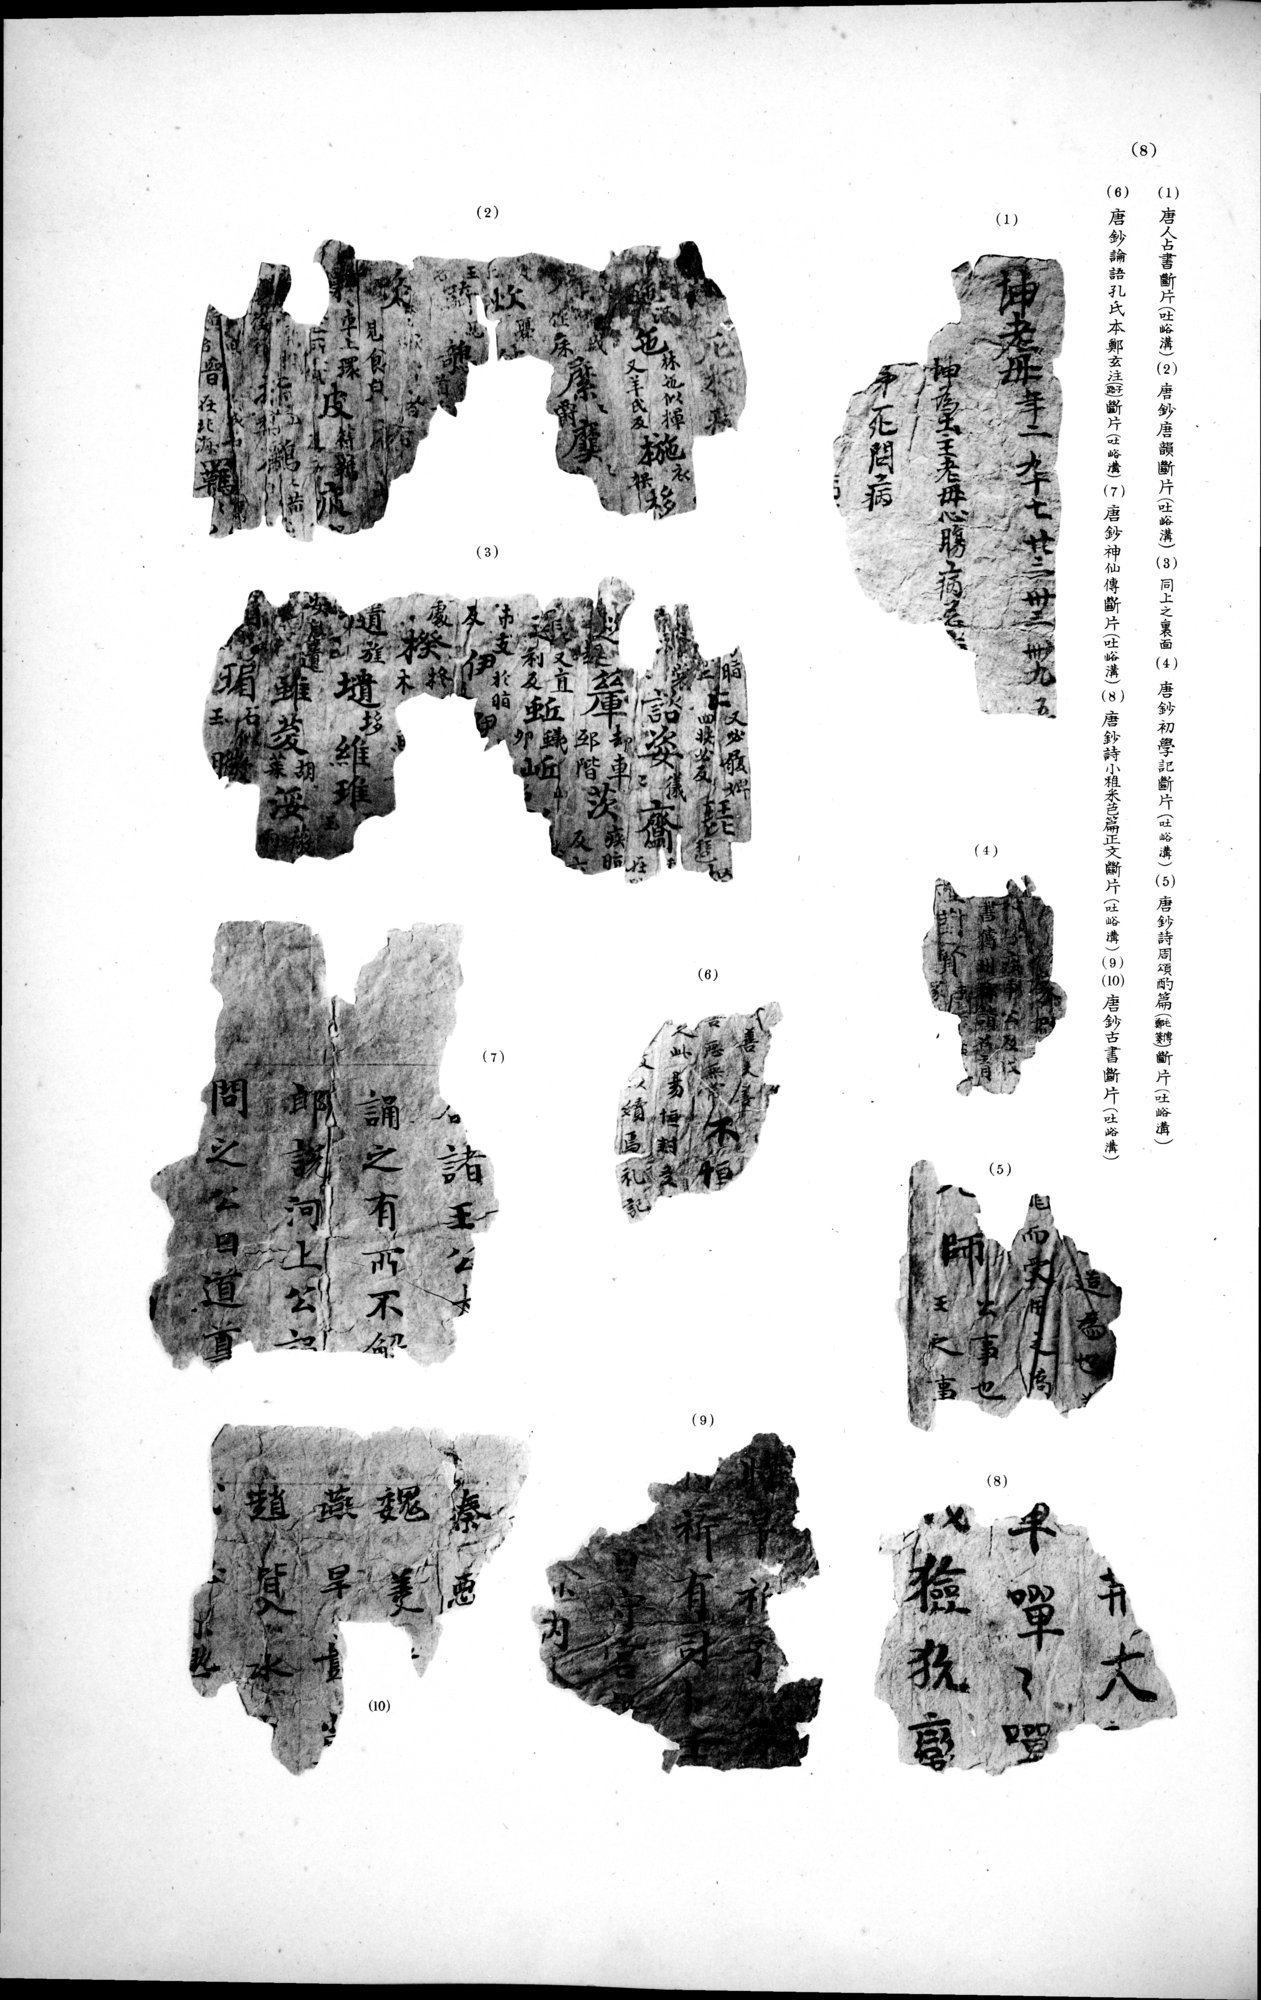 西域考古図譜 : vol.2 / Page 245 (Grayscale High Resolution Image)